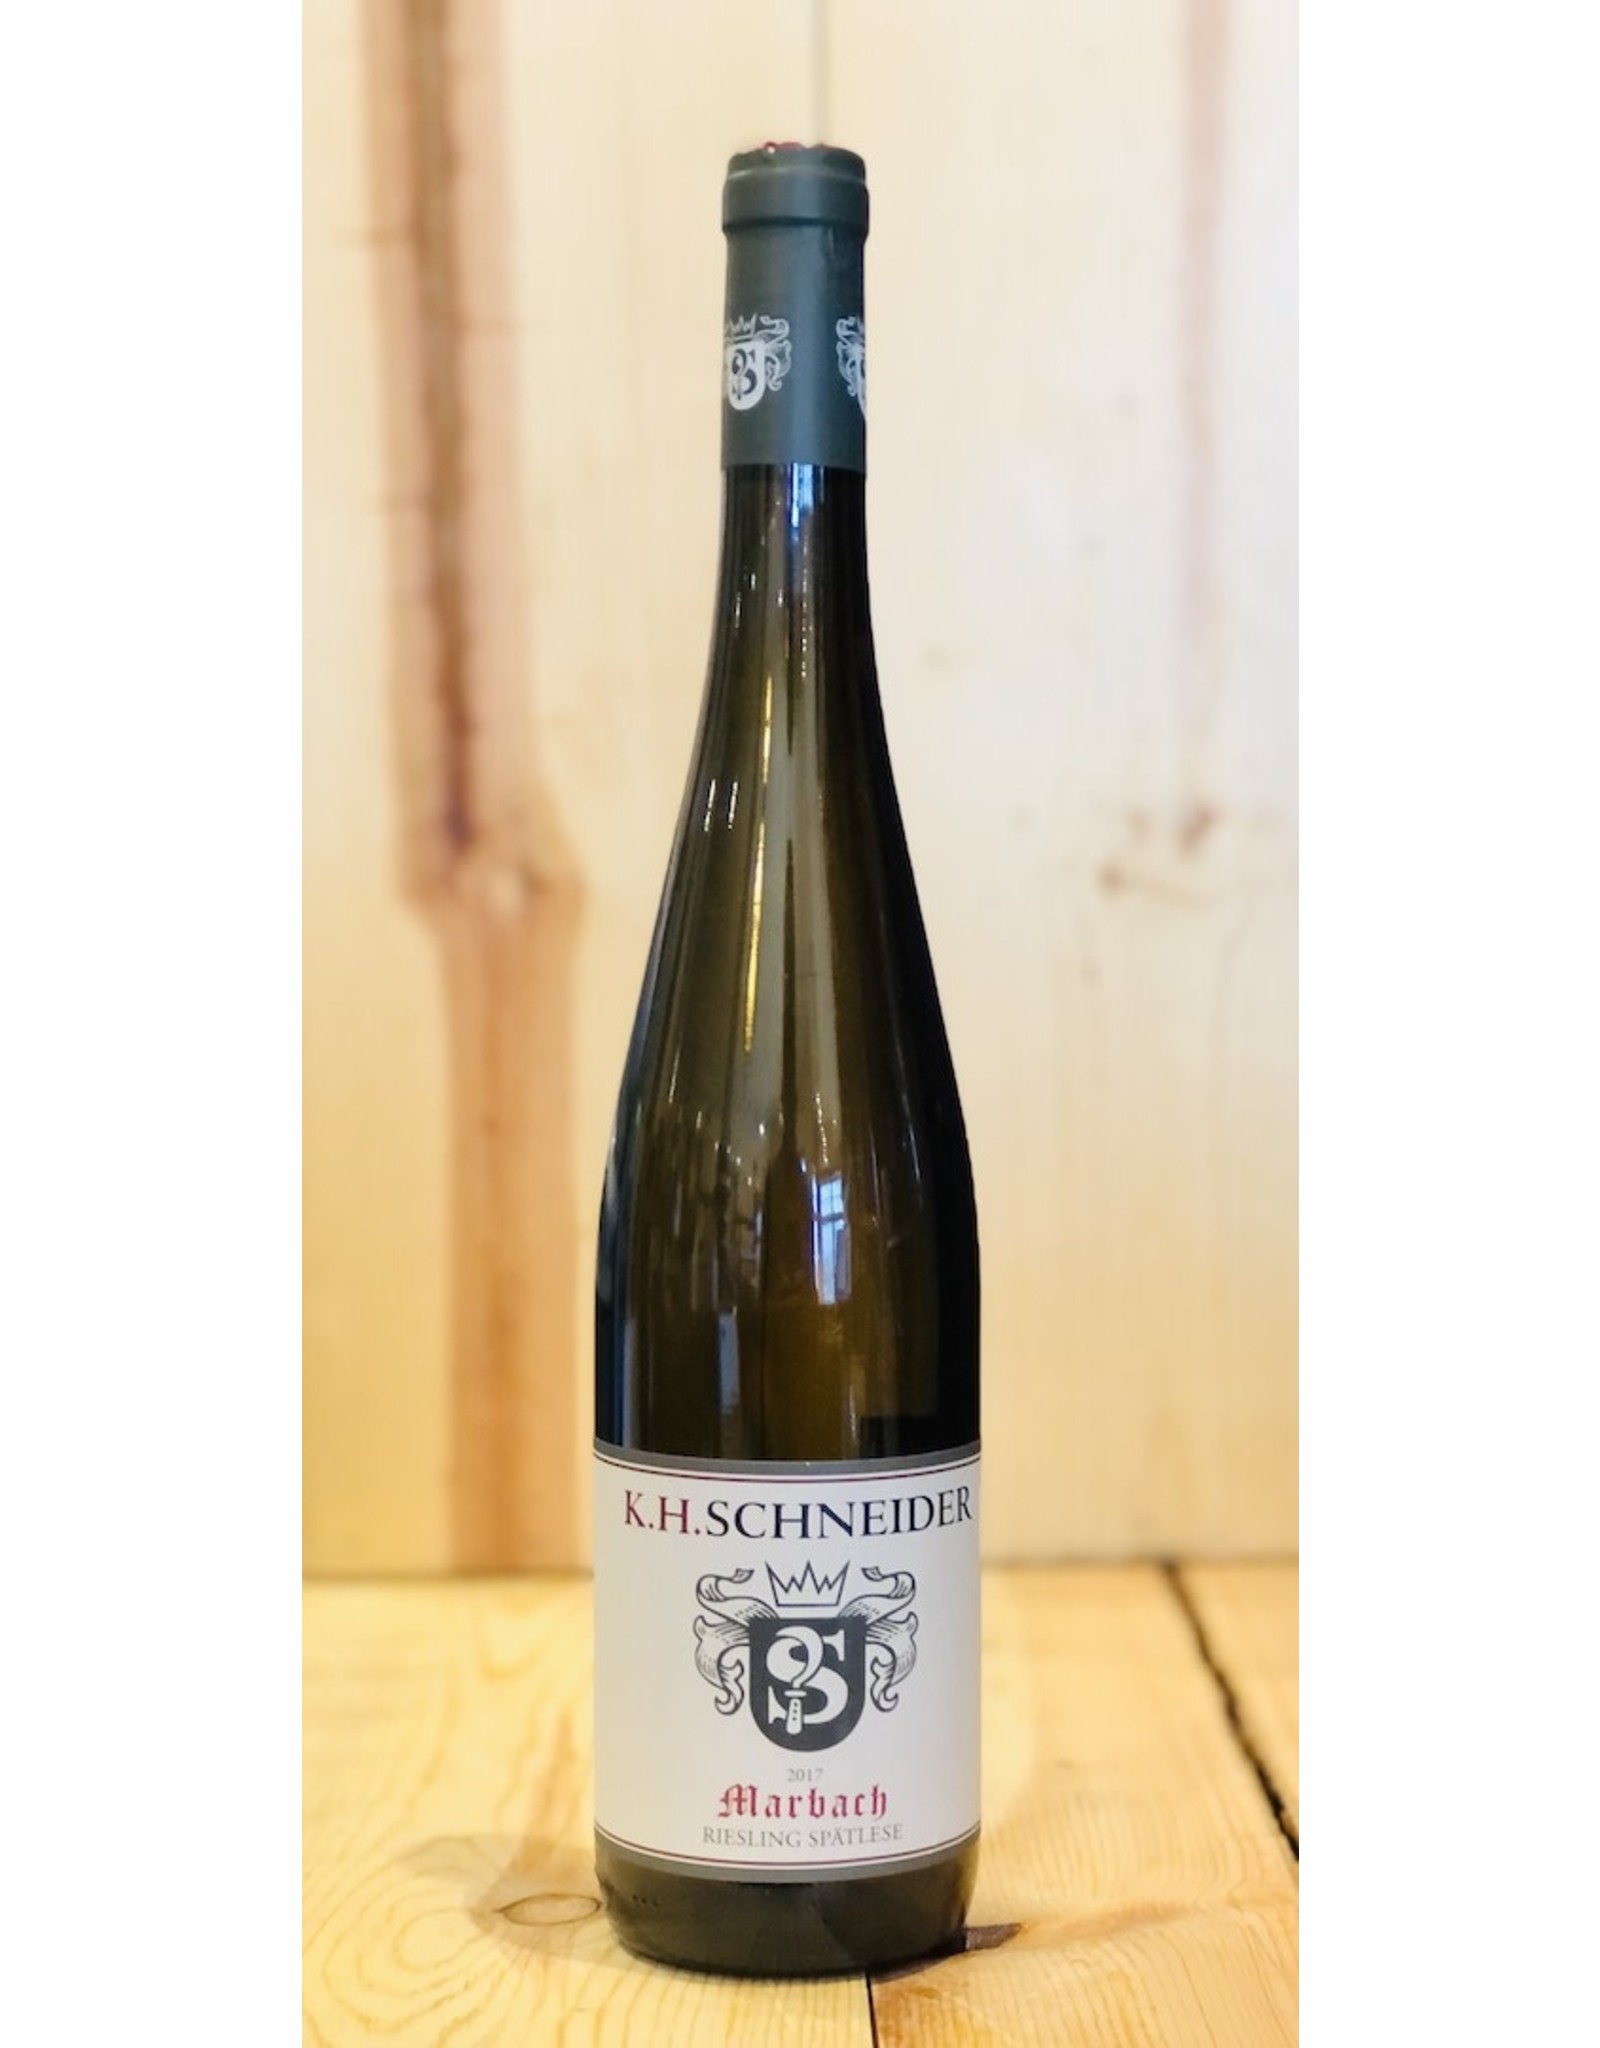 Wine K.H. Schneider ‘Marbach’ Spatlese Riesling